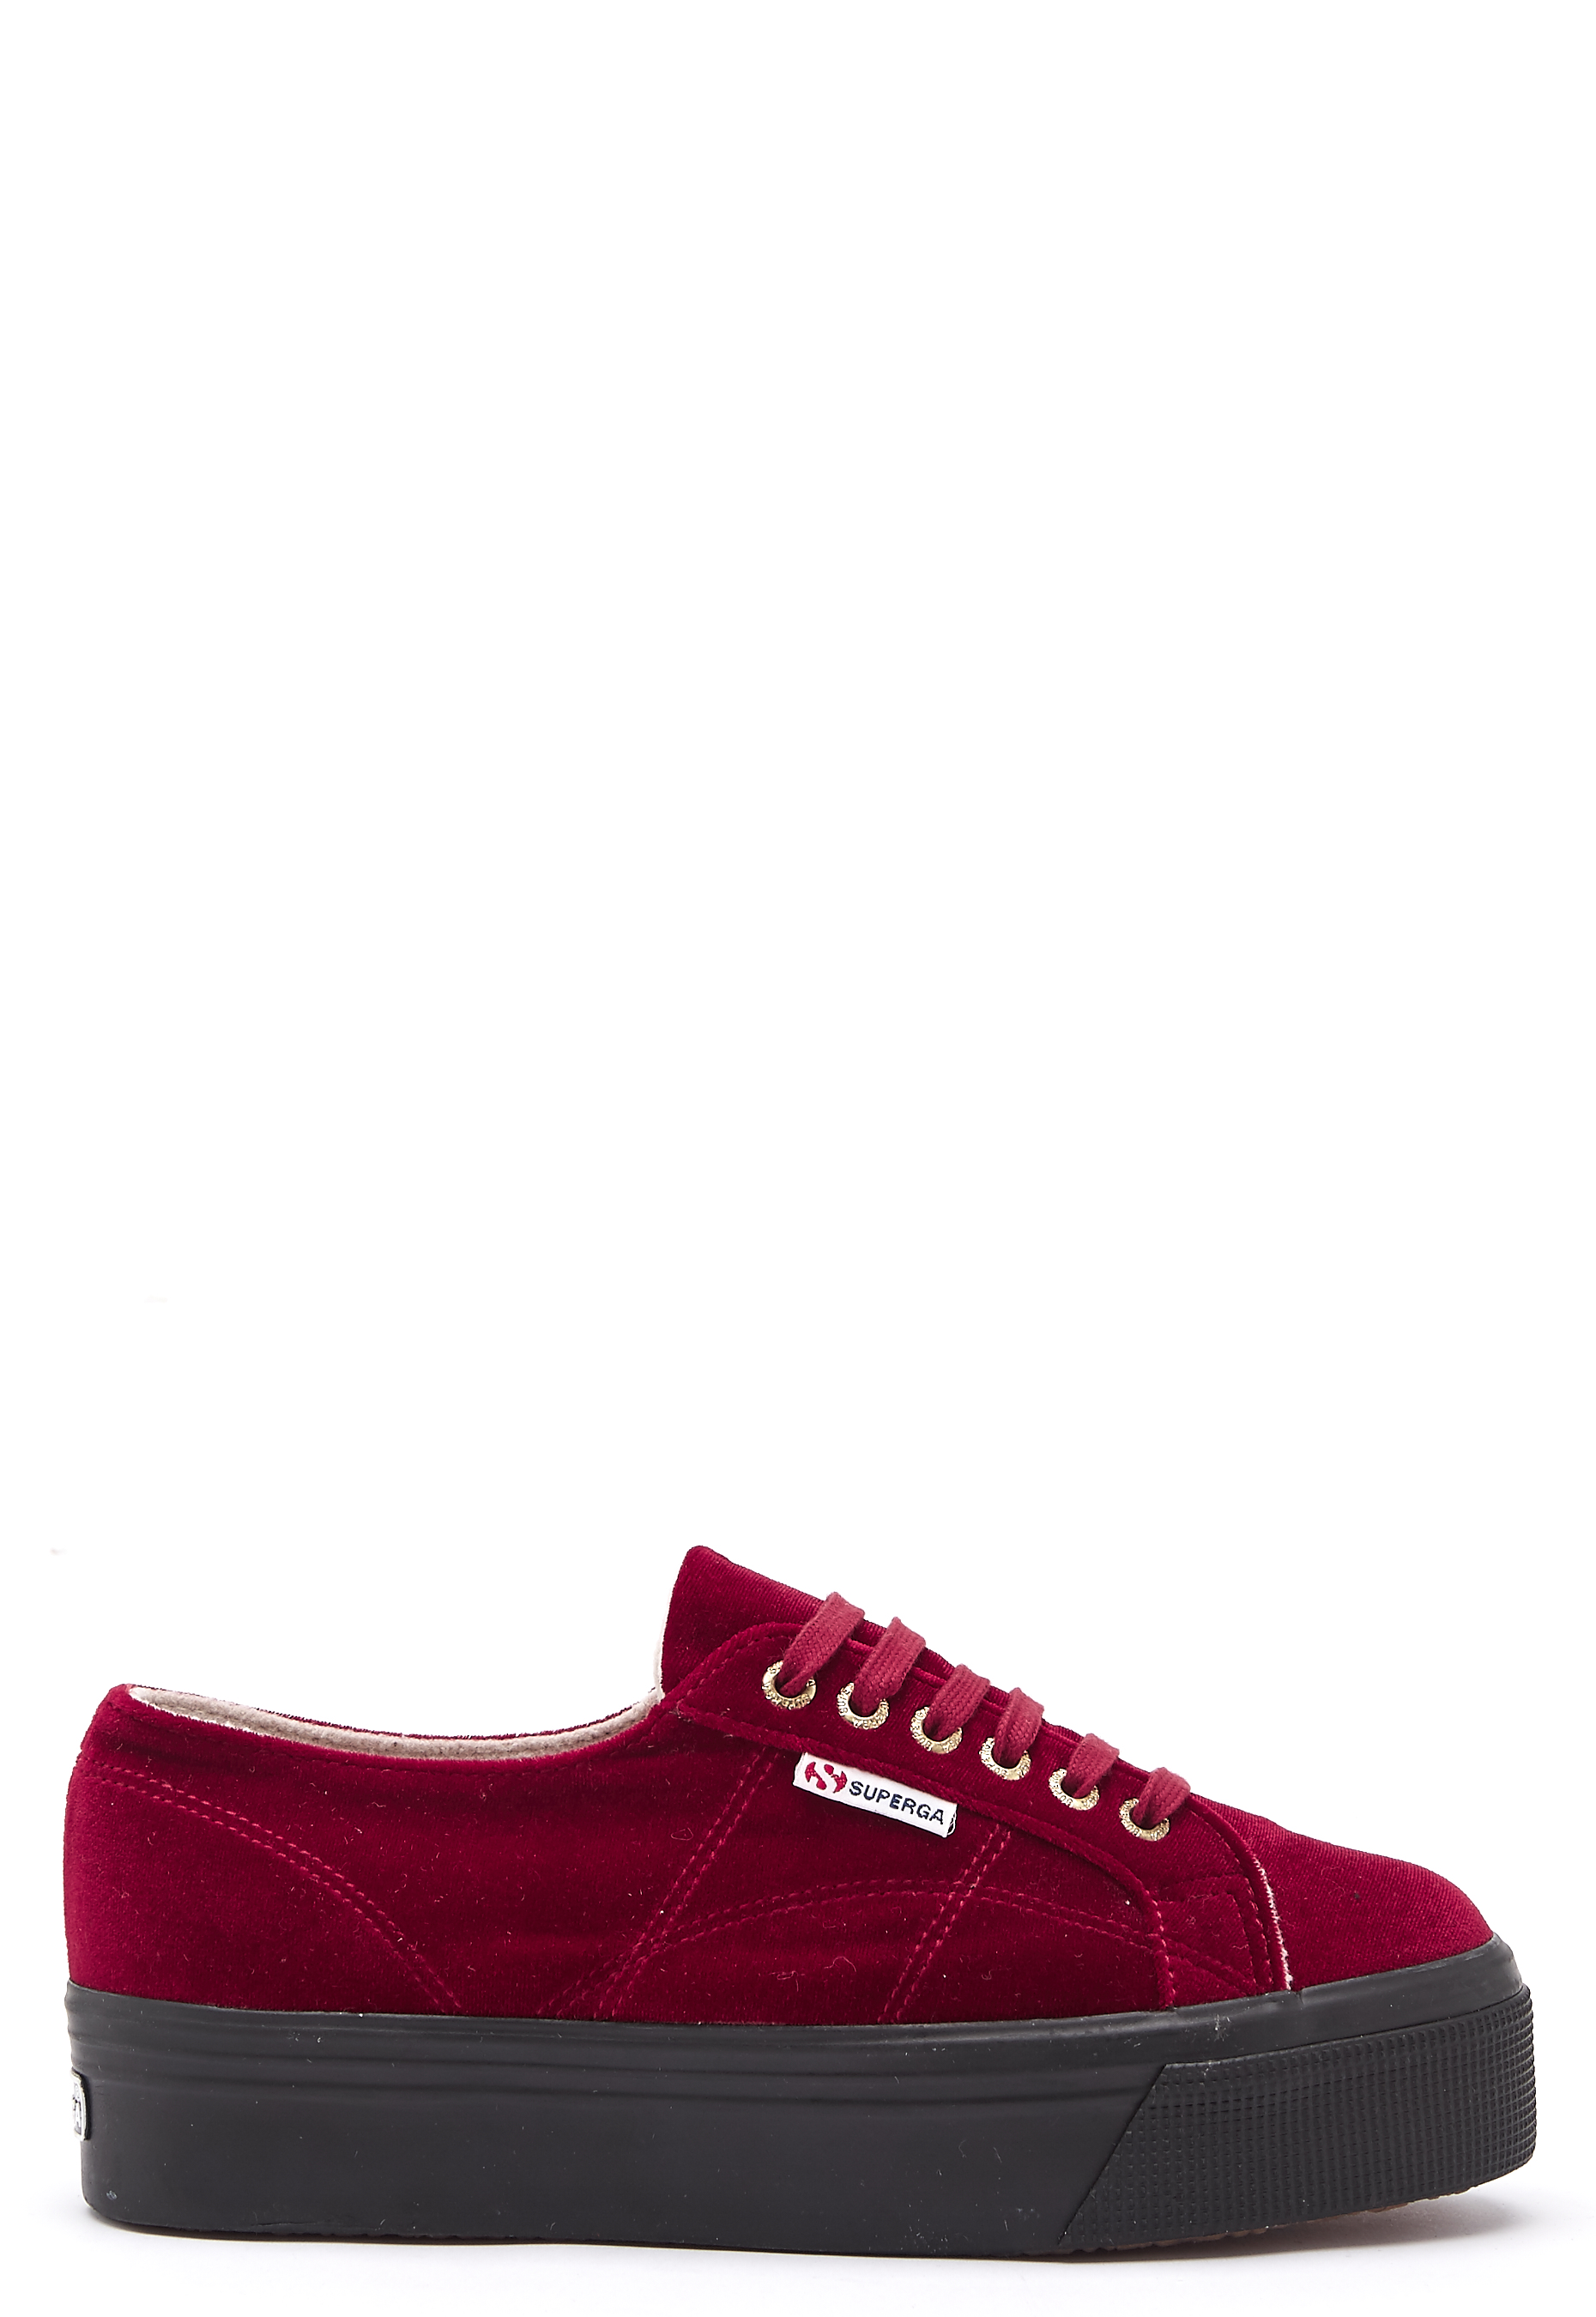 Superga Velvet Sneakers Red - Bubbleroom